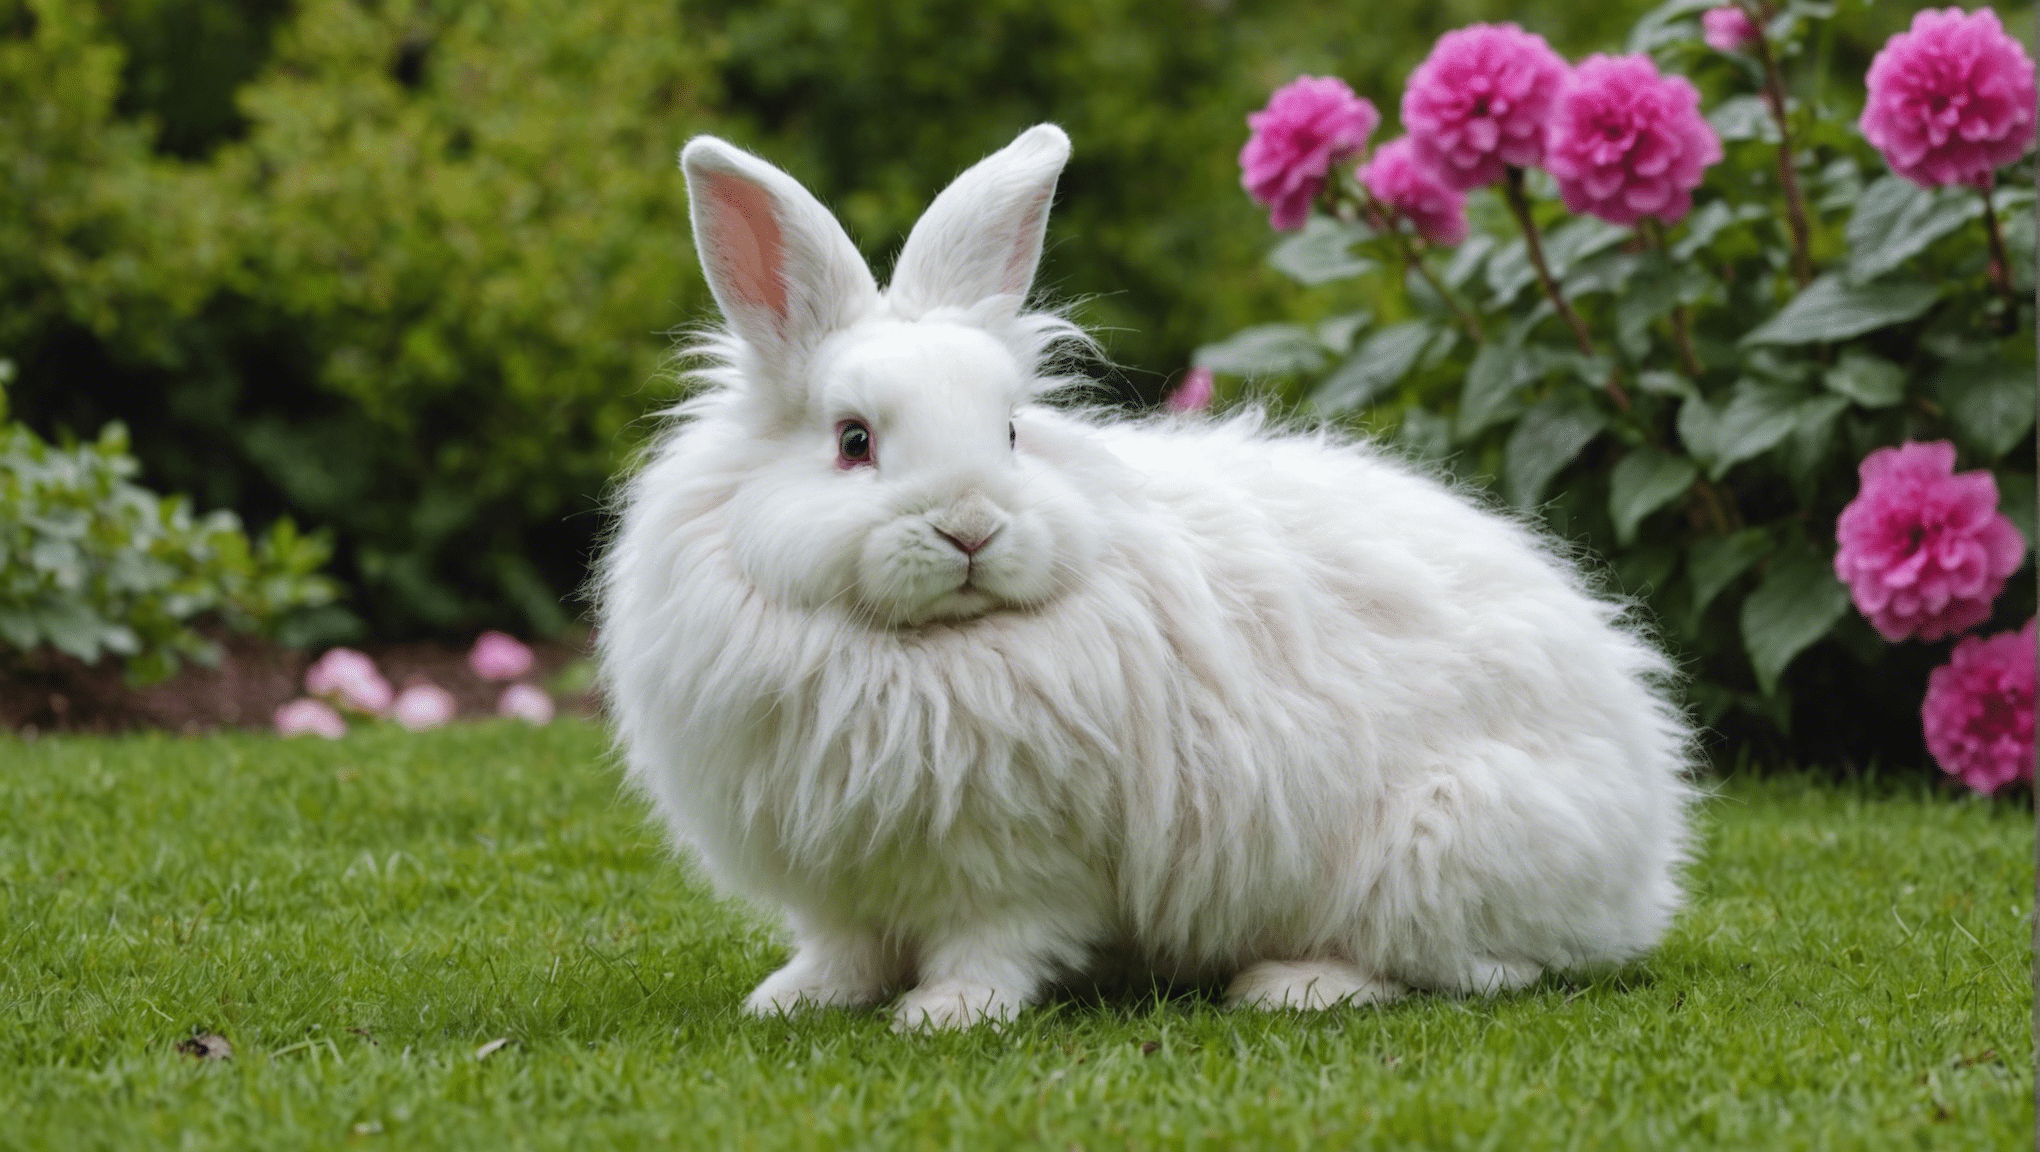 Descubre el comportamiento del conejo de angora en nuestra guía completa. aprenda sobre sus hábitos, temperamento y más.